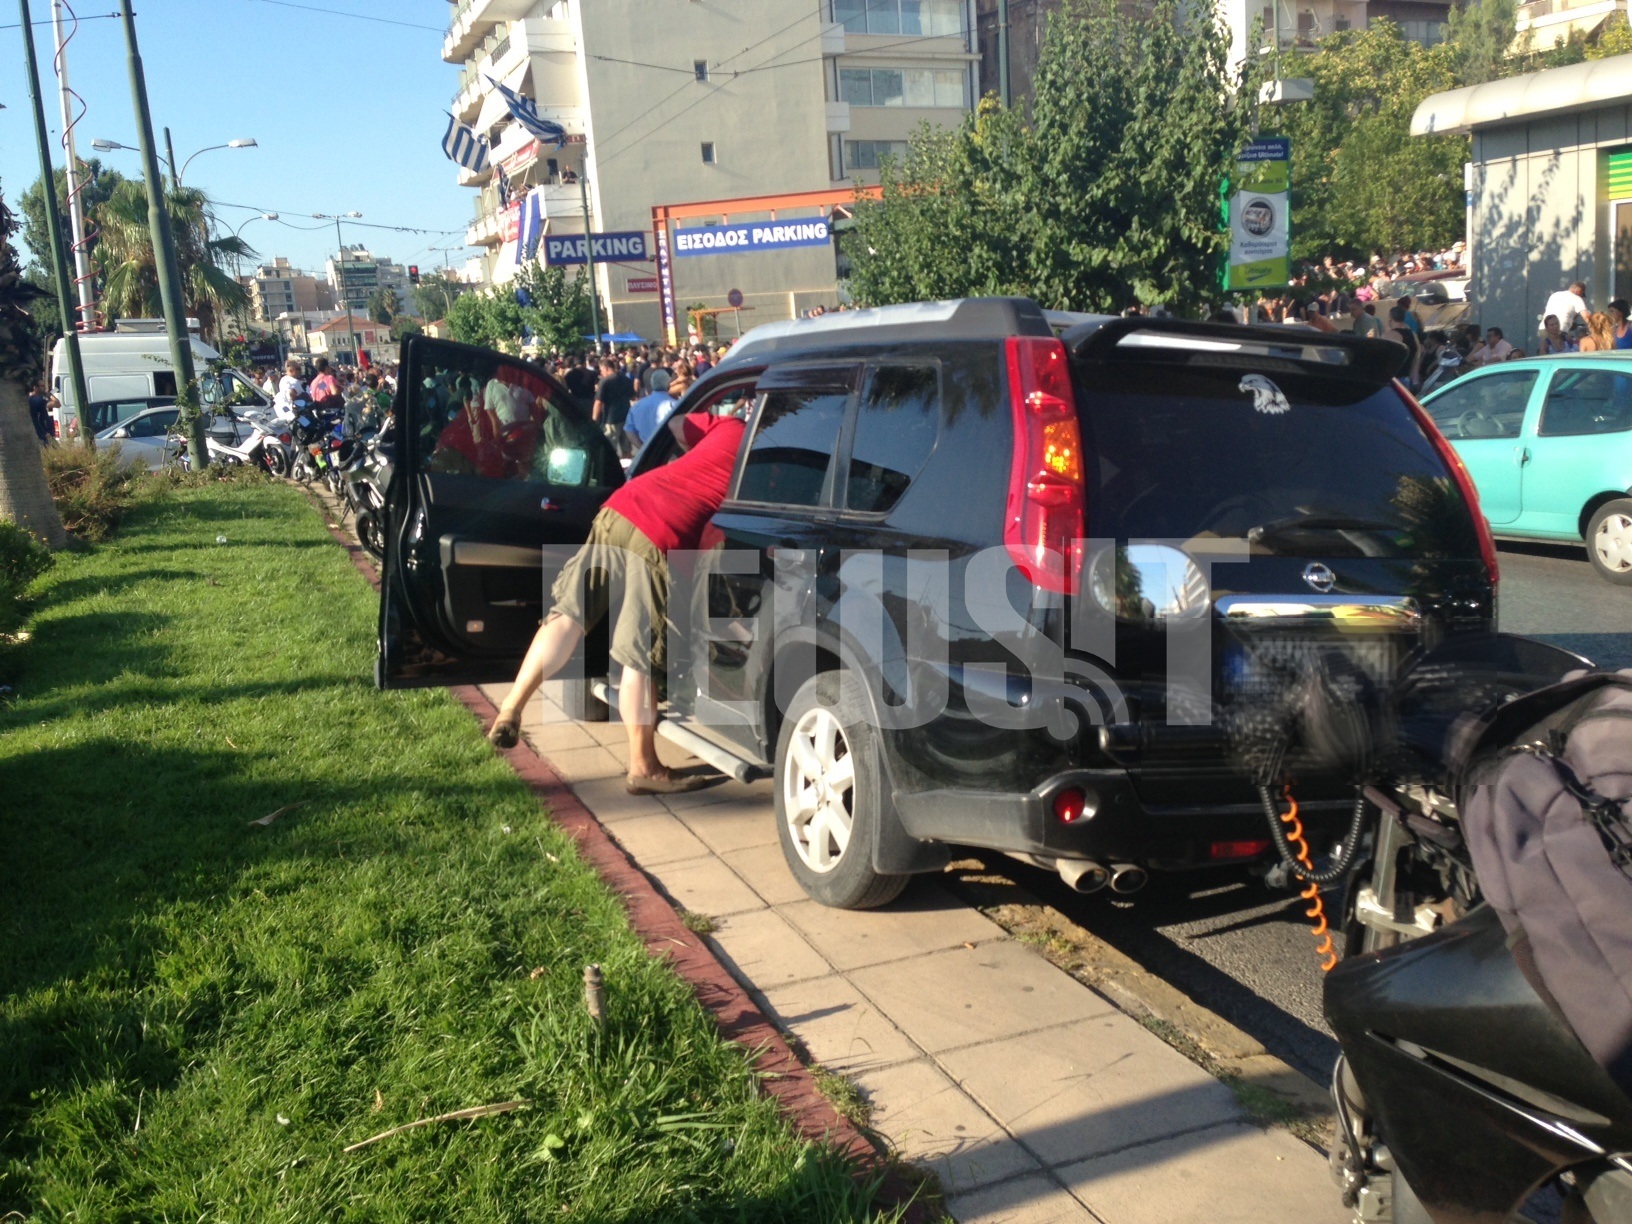 ΦΩΤΟ NEWSIT - Ένας κύριος που εάν κρίνουμε από το αυτοκίνητό του δεν έχει οικονομικό πρόβλημα